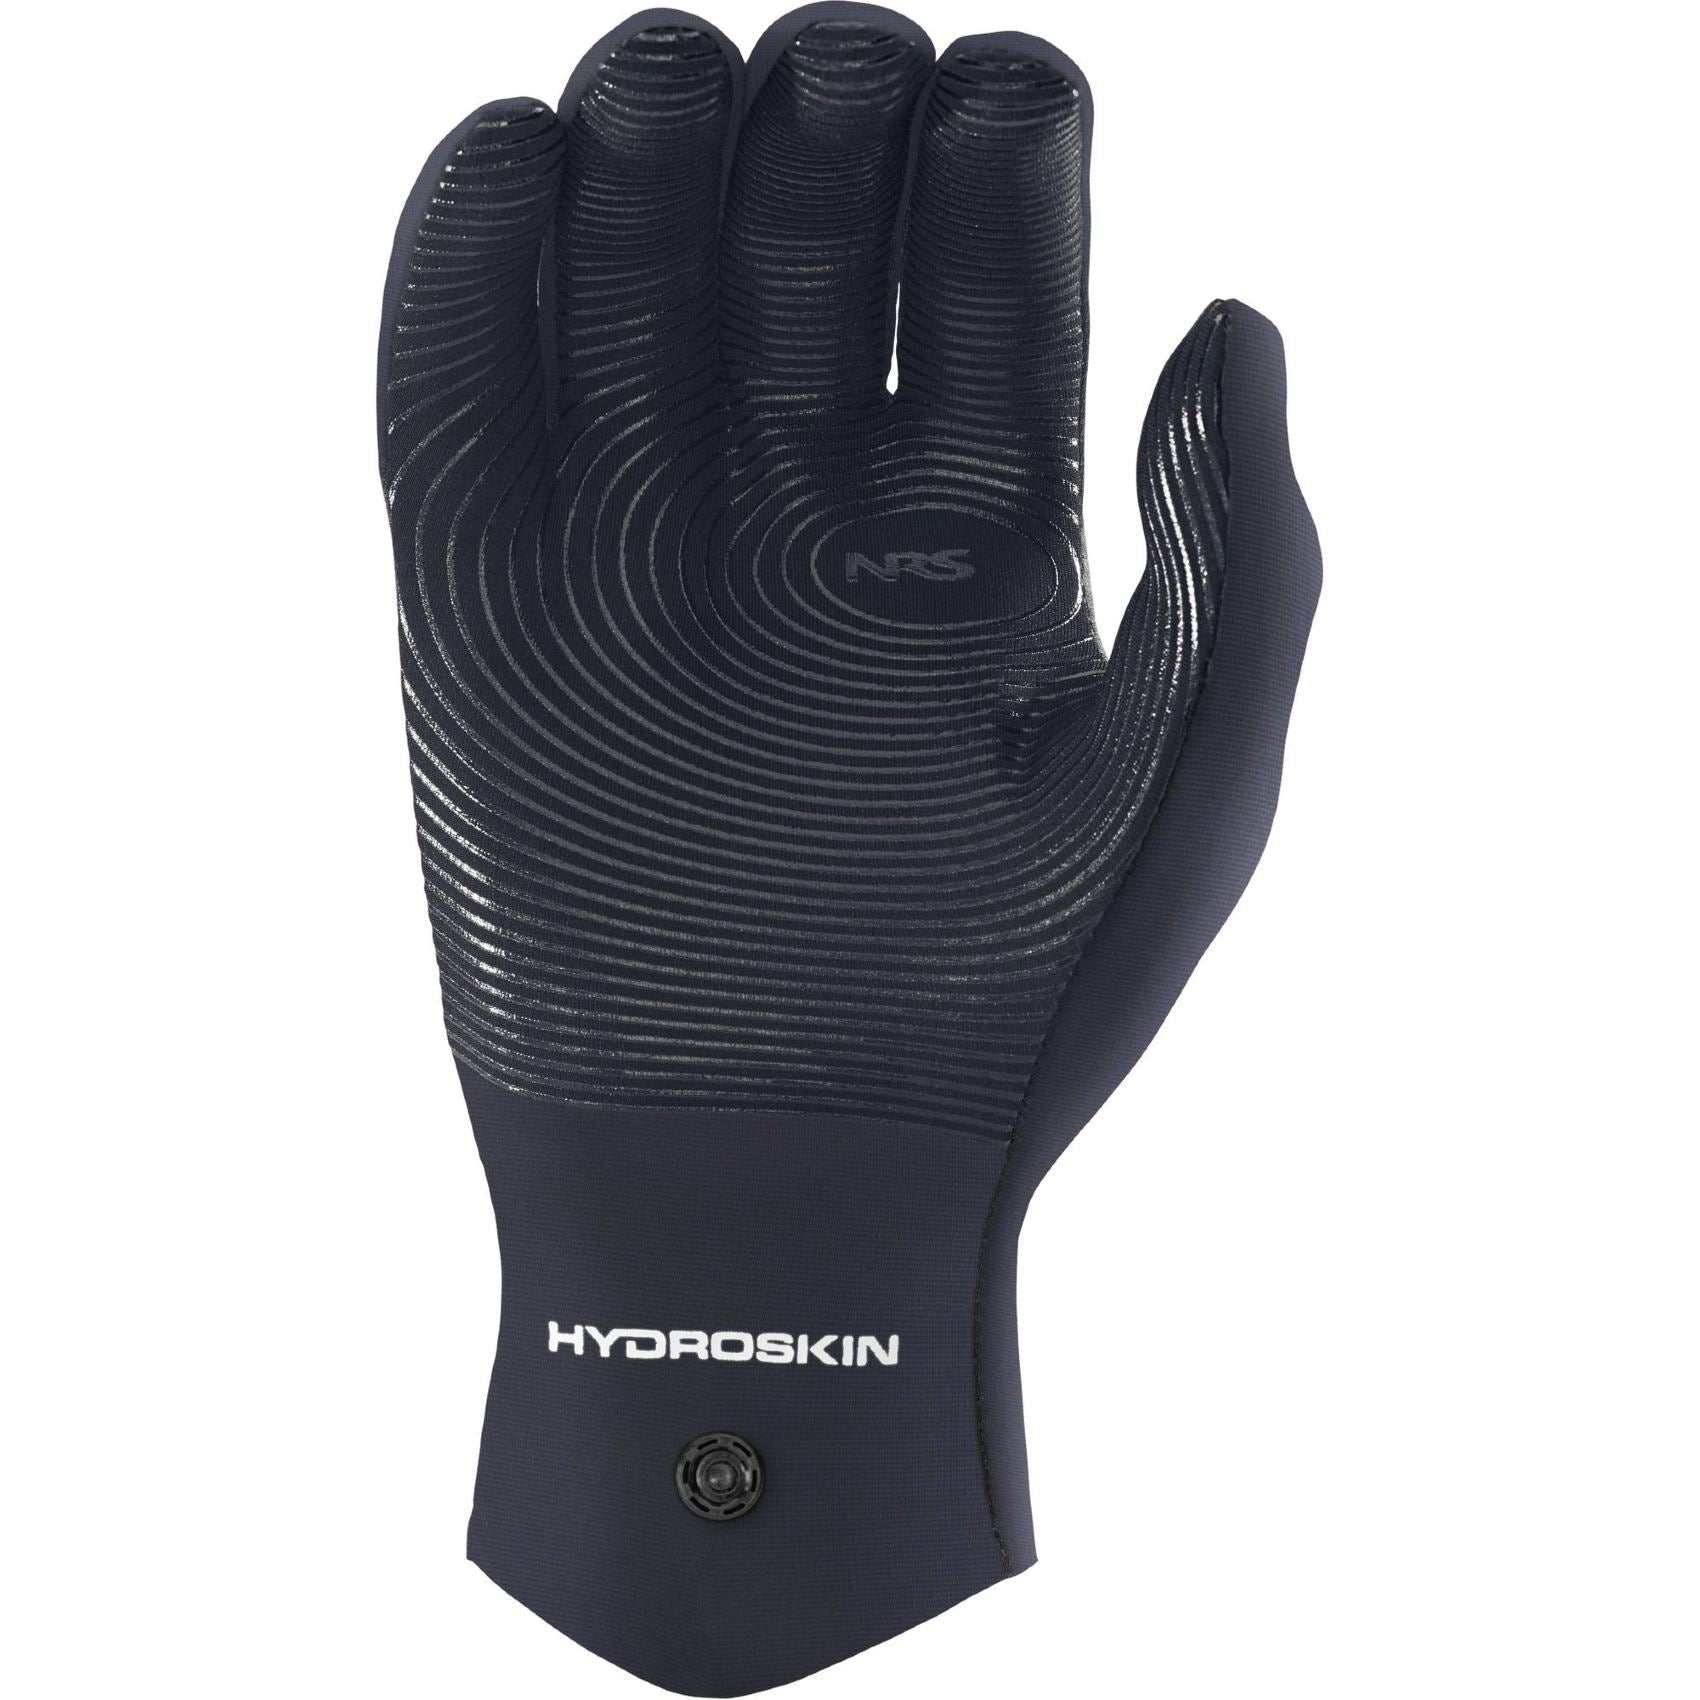 NRS HydroSkin Paddling Gloves, Women's